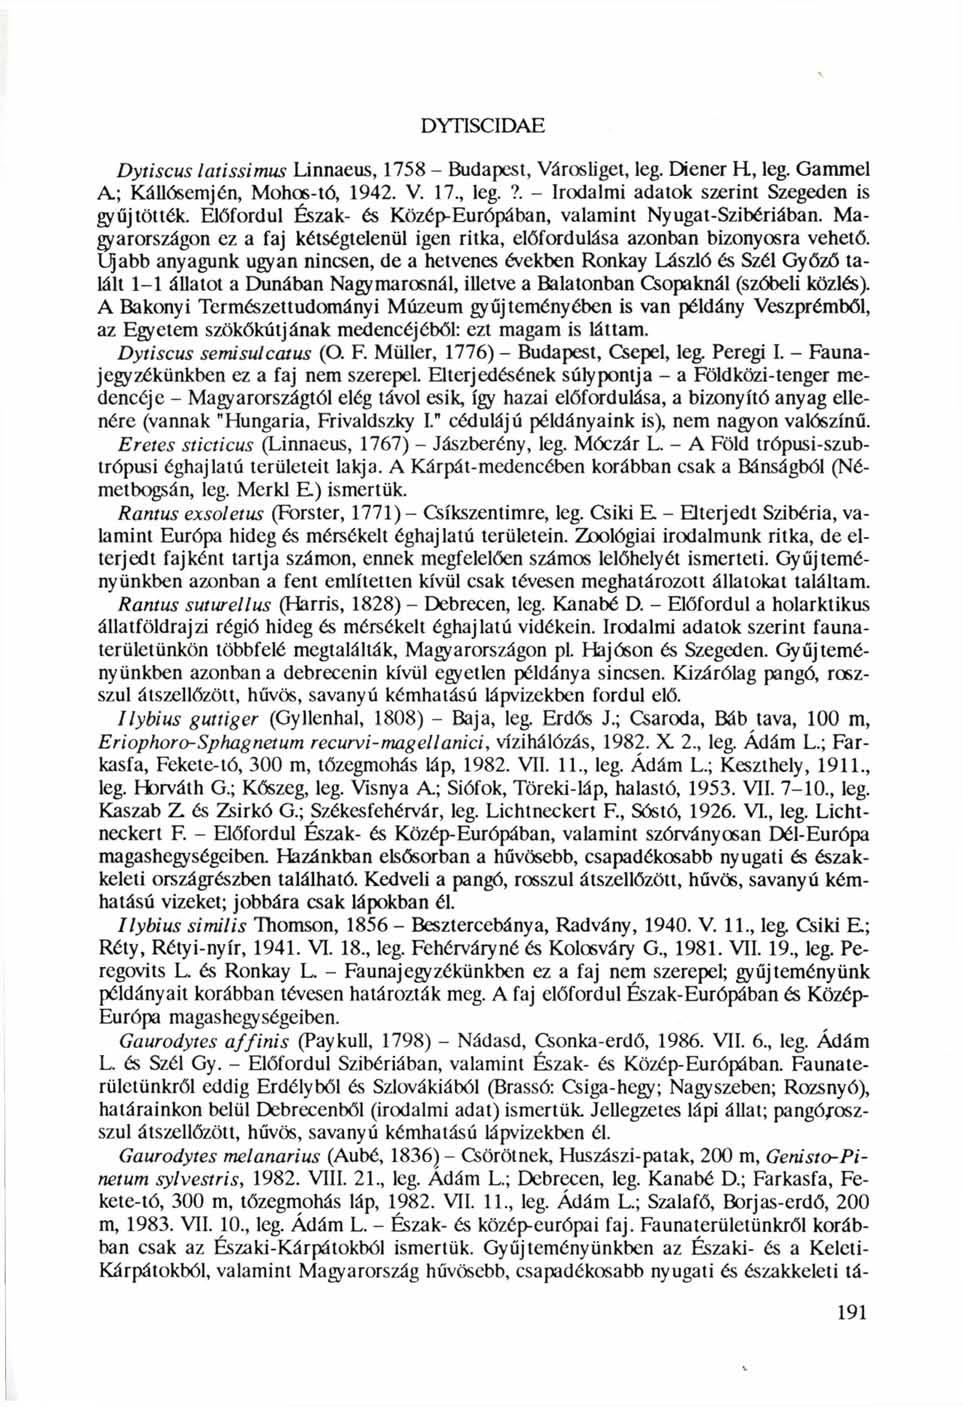 DYnSCIDAE Dytiscus latissimus Linnaeus, 1758 - Budapest, Városliget, leg. Diener H, leg. Gammel A; Kállósemjén, Mohos-tó, 1942. V. 17., leg.?. - Irodalmi adatok szerint Szegeden is gyűjtötték.